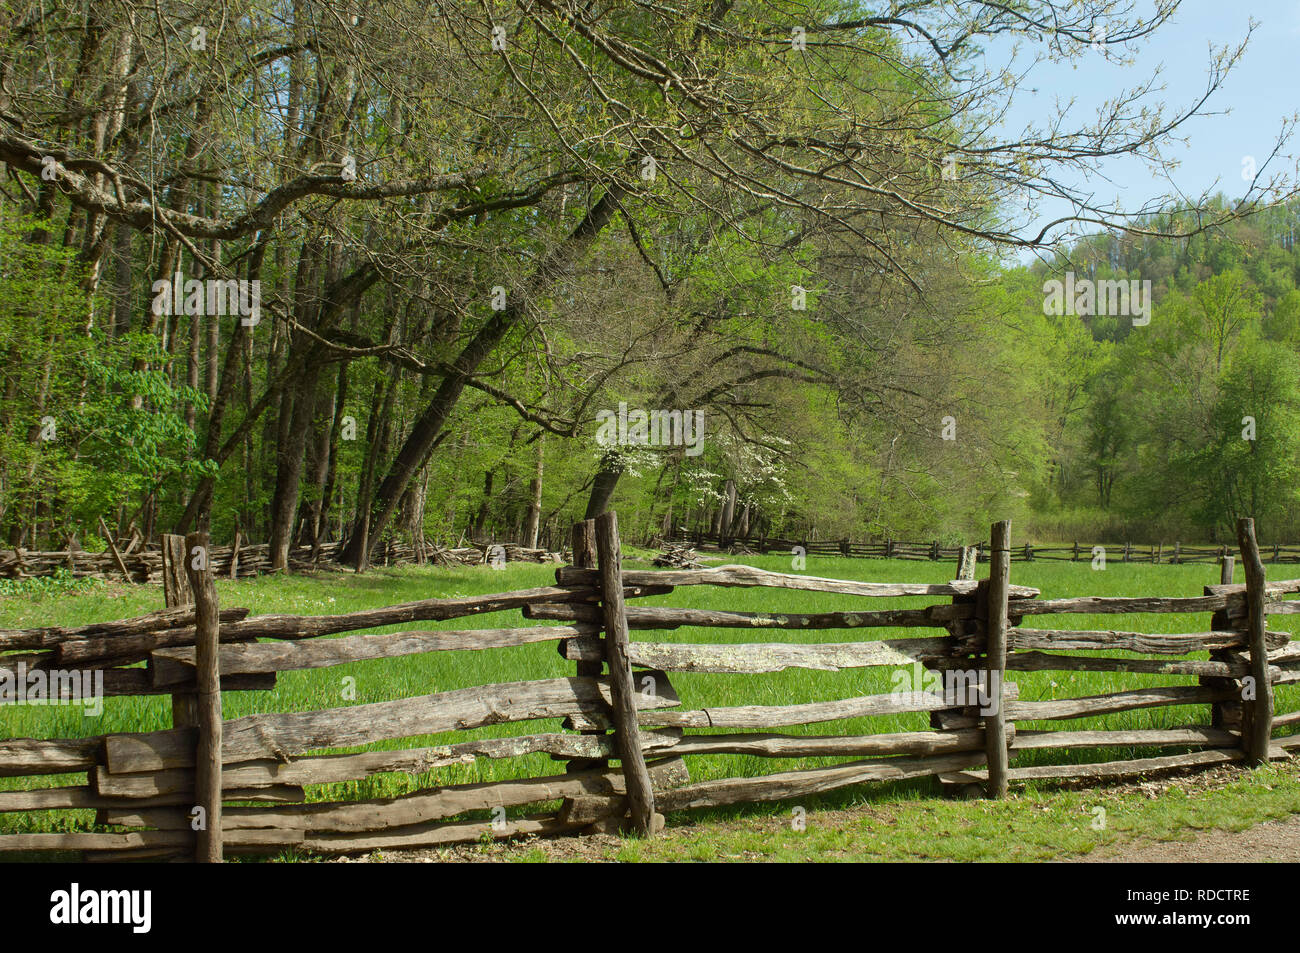 Clôture en lisse, Great Smoky Mountains National Park, frontière de NC et TN. Photographie numérique Banque D'Images